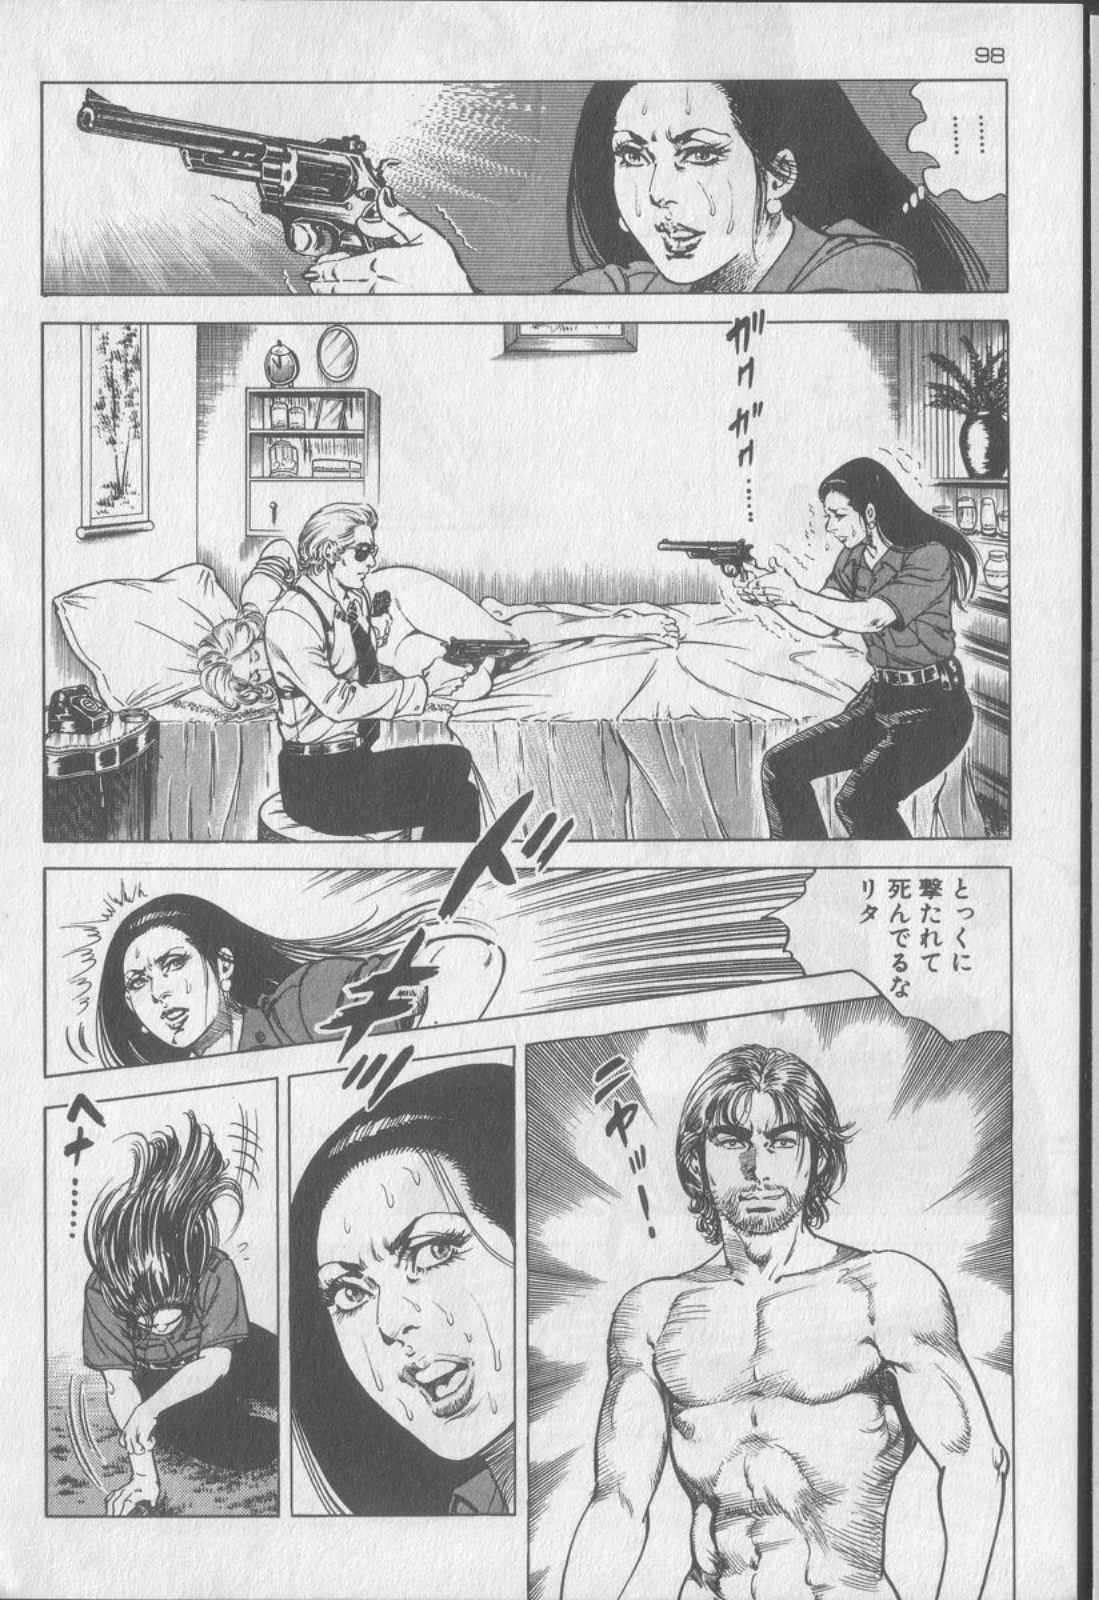 [Kano Seisaku, Koike Kazuo] Jikken Ningyou Dummy Oscar Vol.07 [叶精作, 小池一夫] 実験人形ダミー・オスカー 第07巻